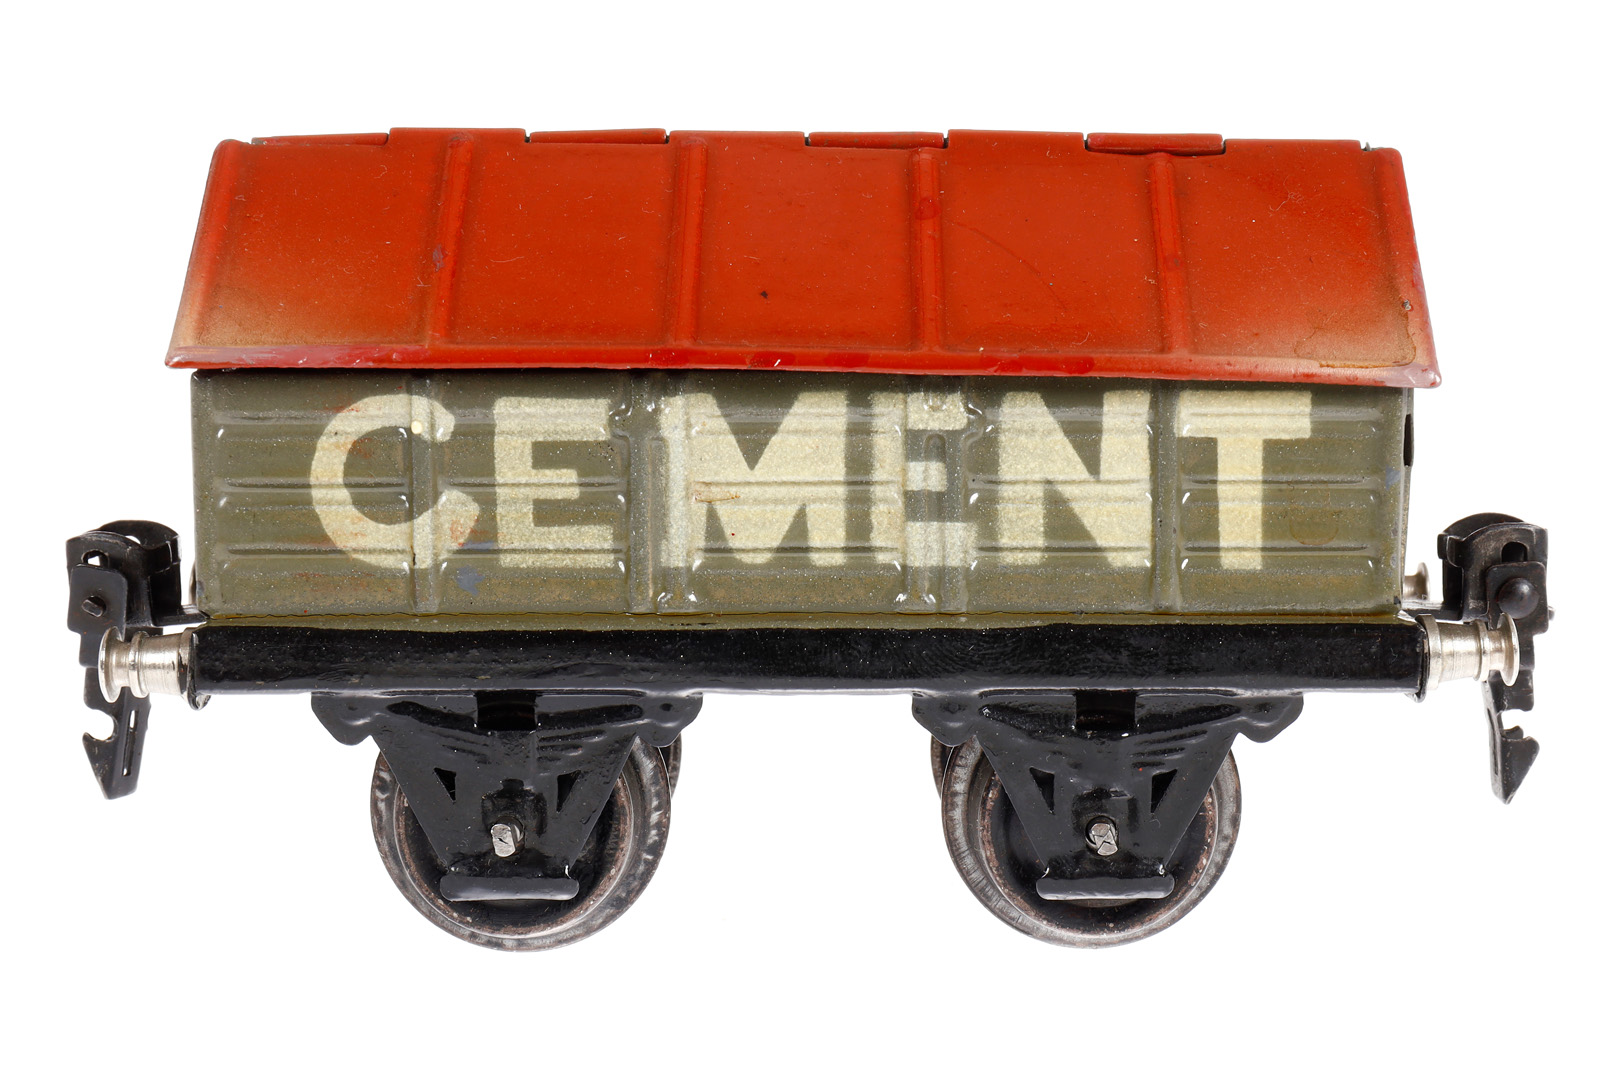 Märklin Zementwagen 1919, Spur 0, HL, LS tw ausgeb., gealterter Lack, L 13, sonst noch Z 2